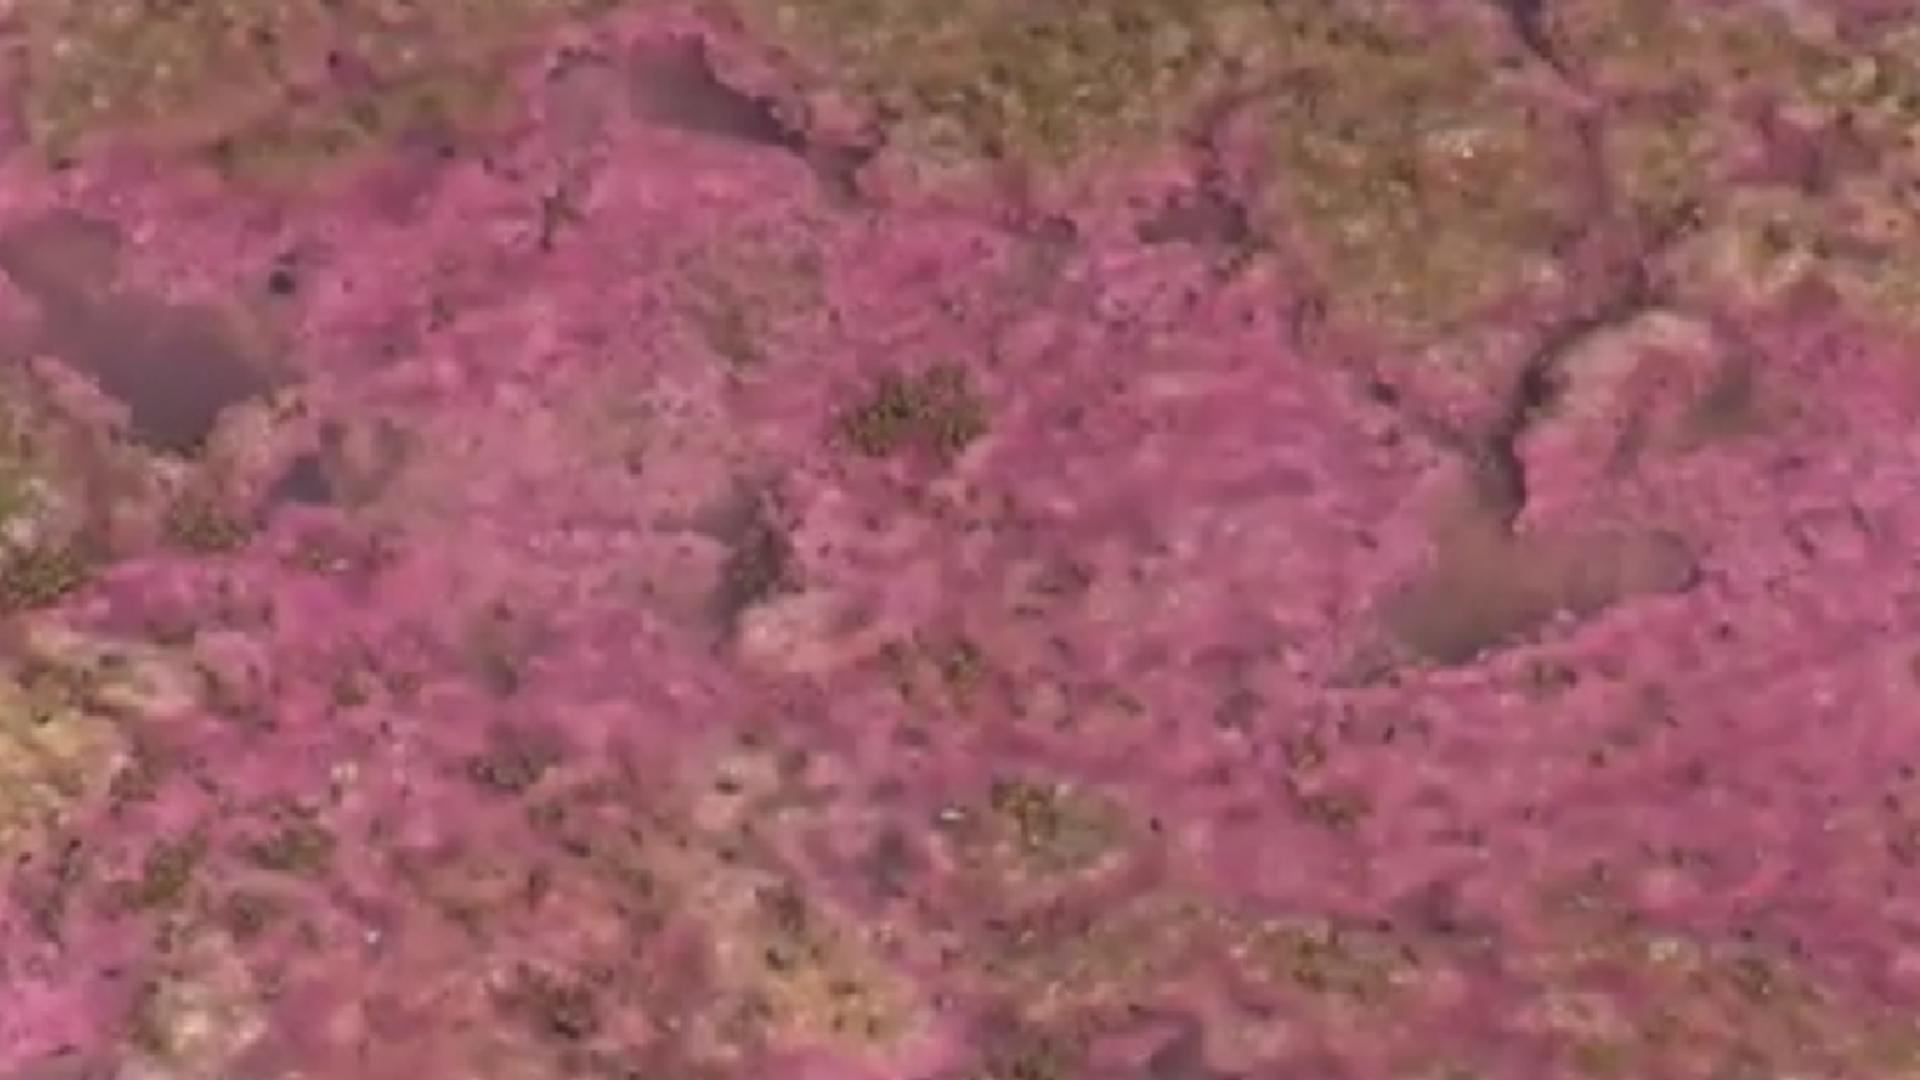 Alertă la malul mării! Lacul Techirghiol a devenit roz și miroase urât - Care este motivul